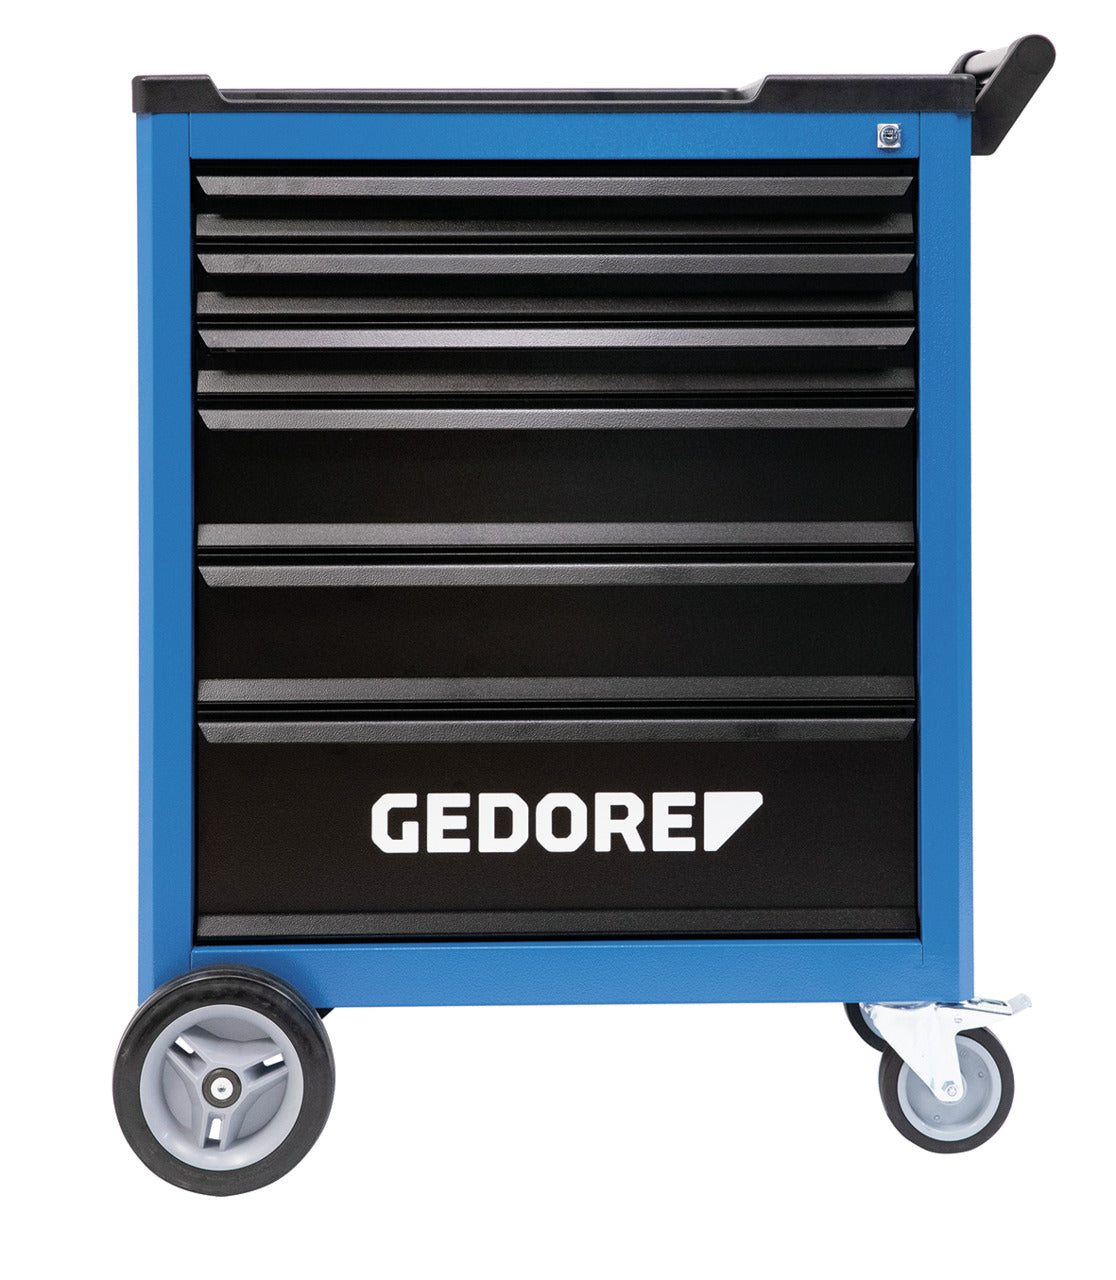 GEDORE TTB 0321 - Carro porta-herramientas (3411435)